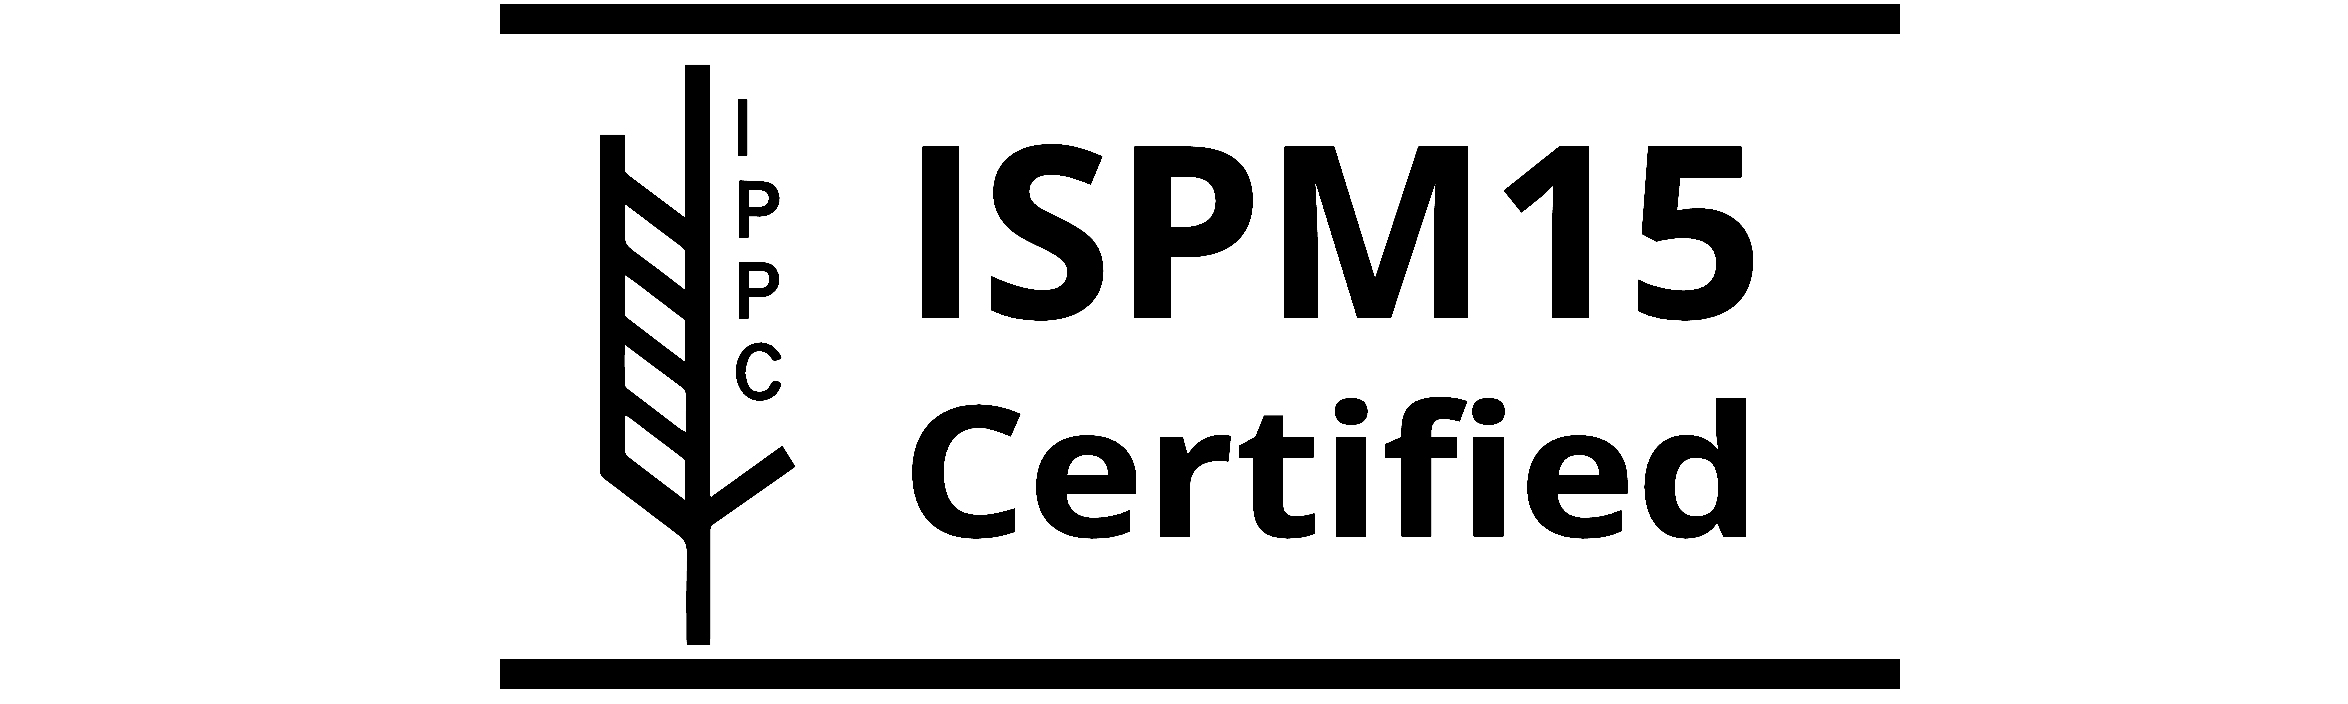 ISPM 15 richtlijnen voor internationaal transport 